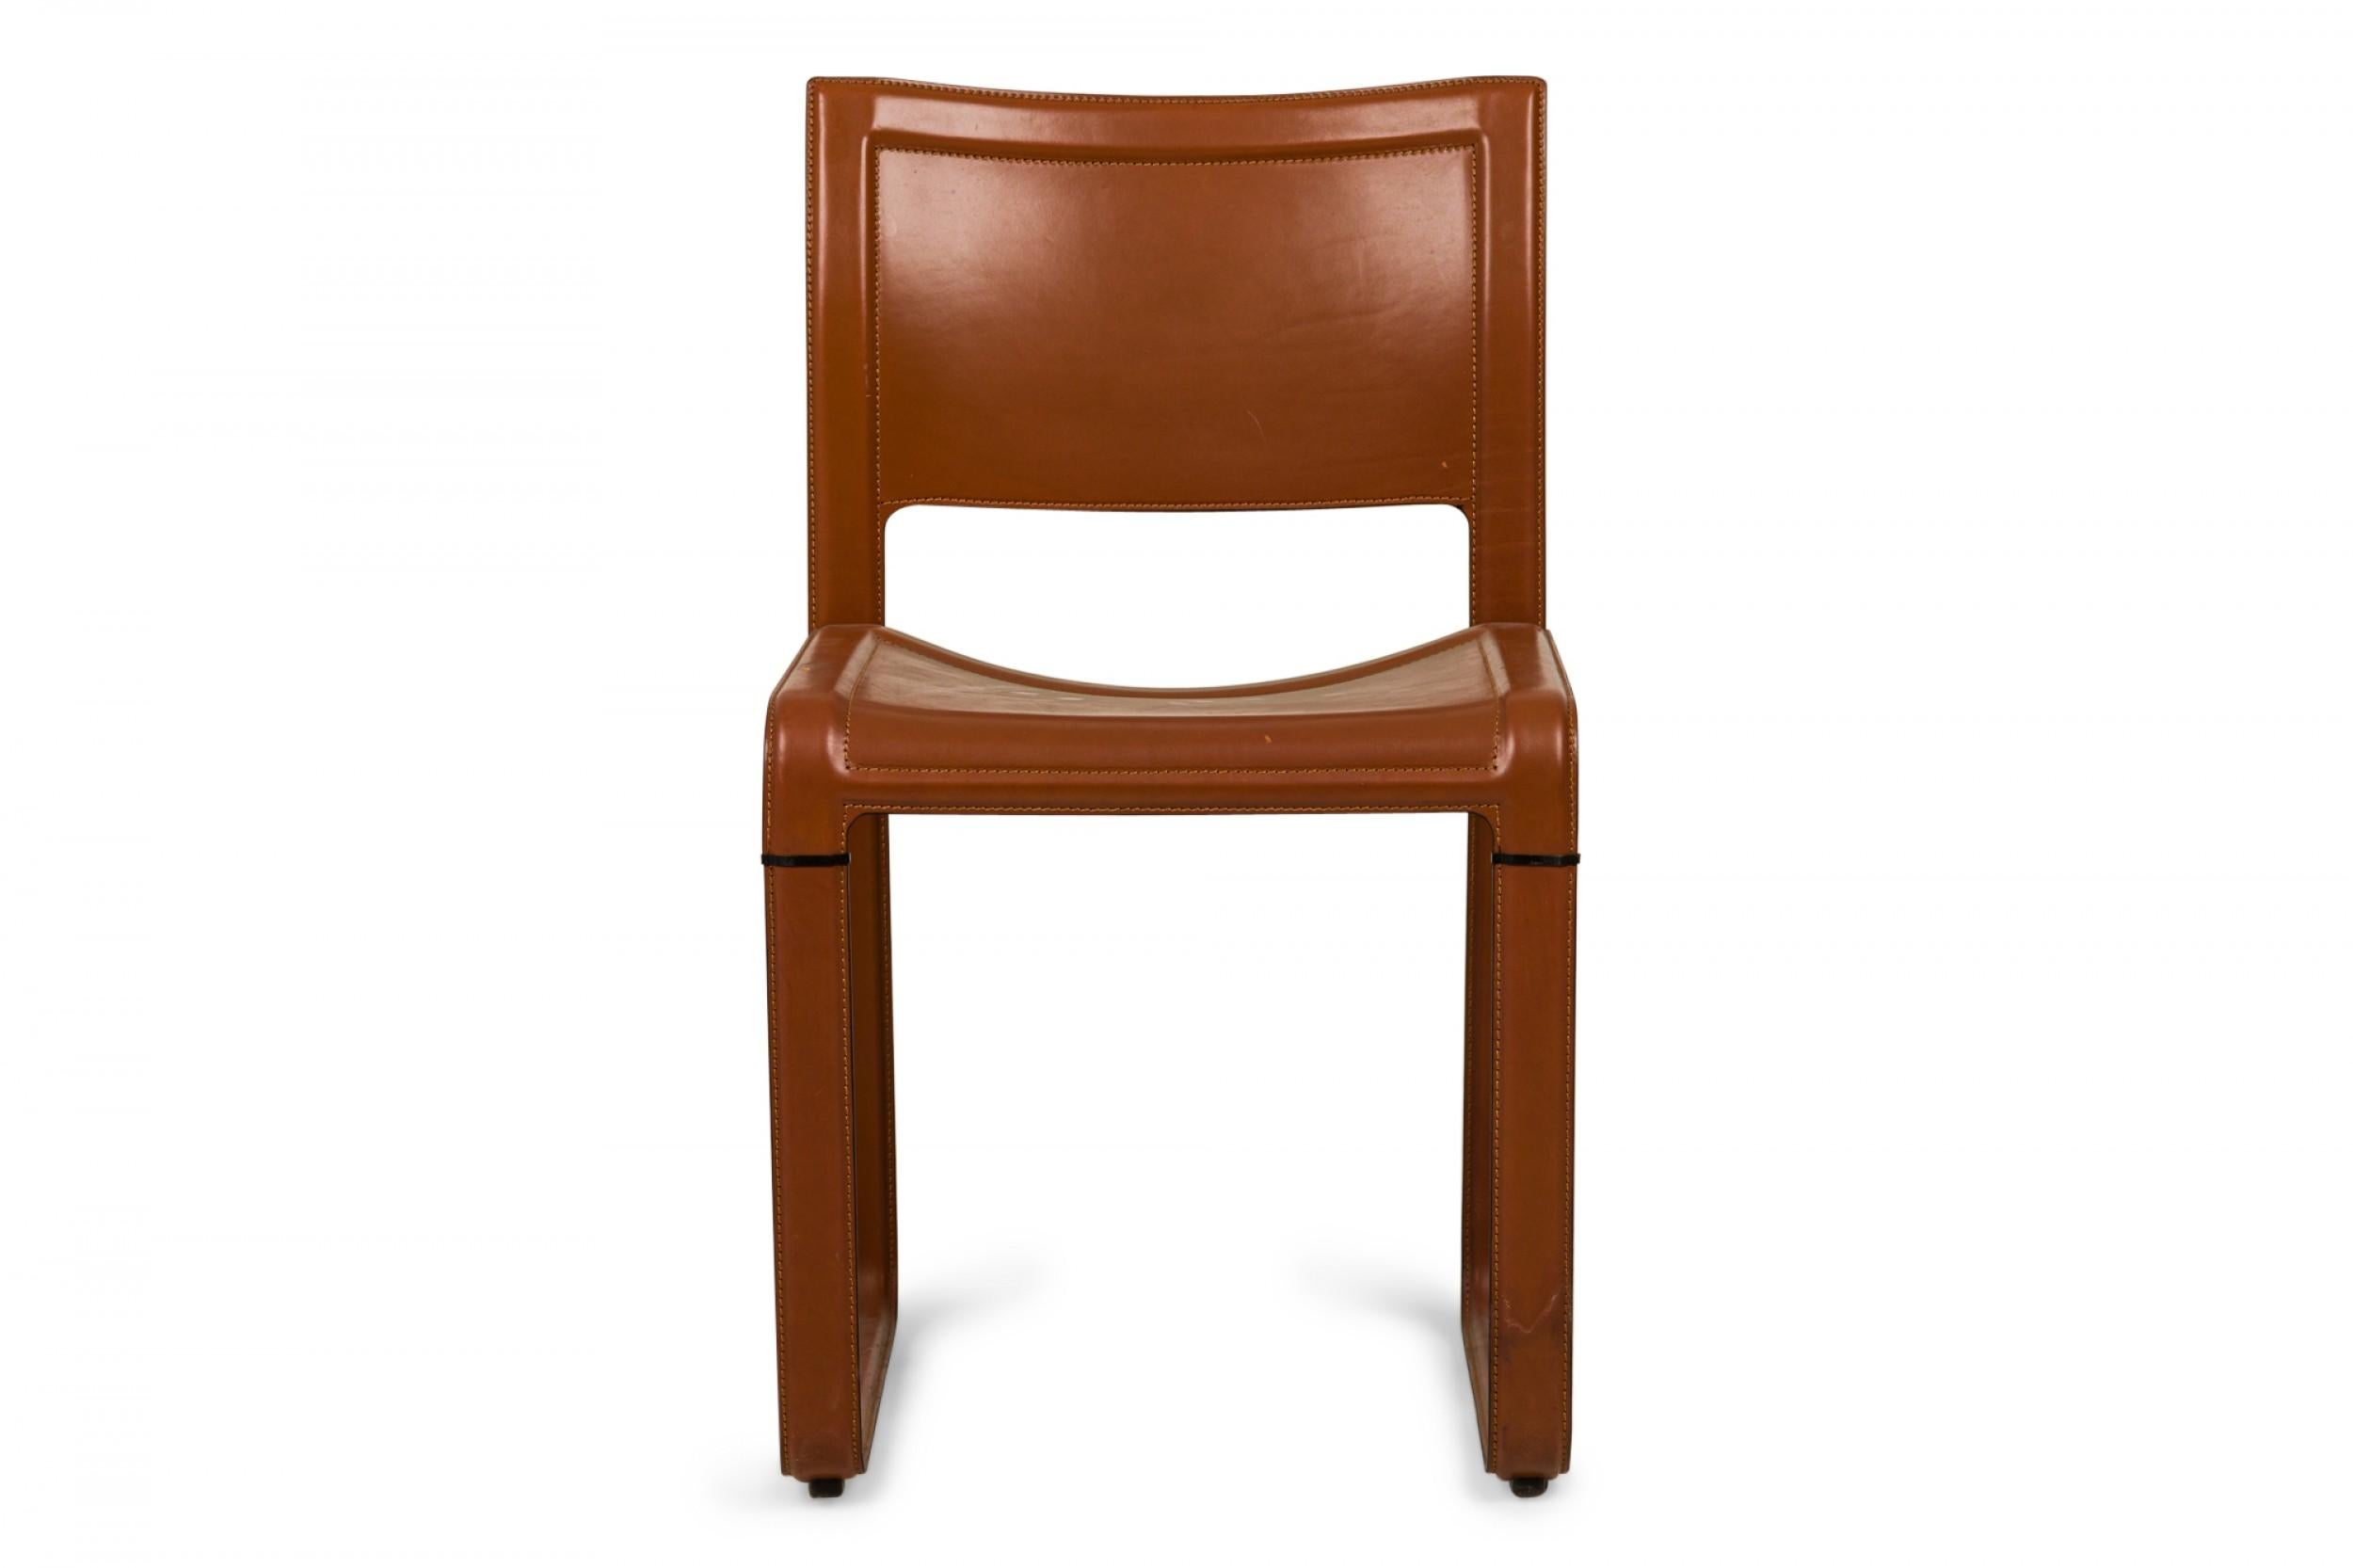 PAIRE de chaises d'appoint italiennes du milieu du siècle, avec châssis et sièges en cuir marron avec surpiqûres définies. (MATTEO GRASSI) (PRIX PAR PAIRE)